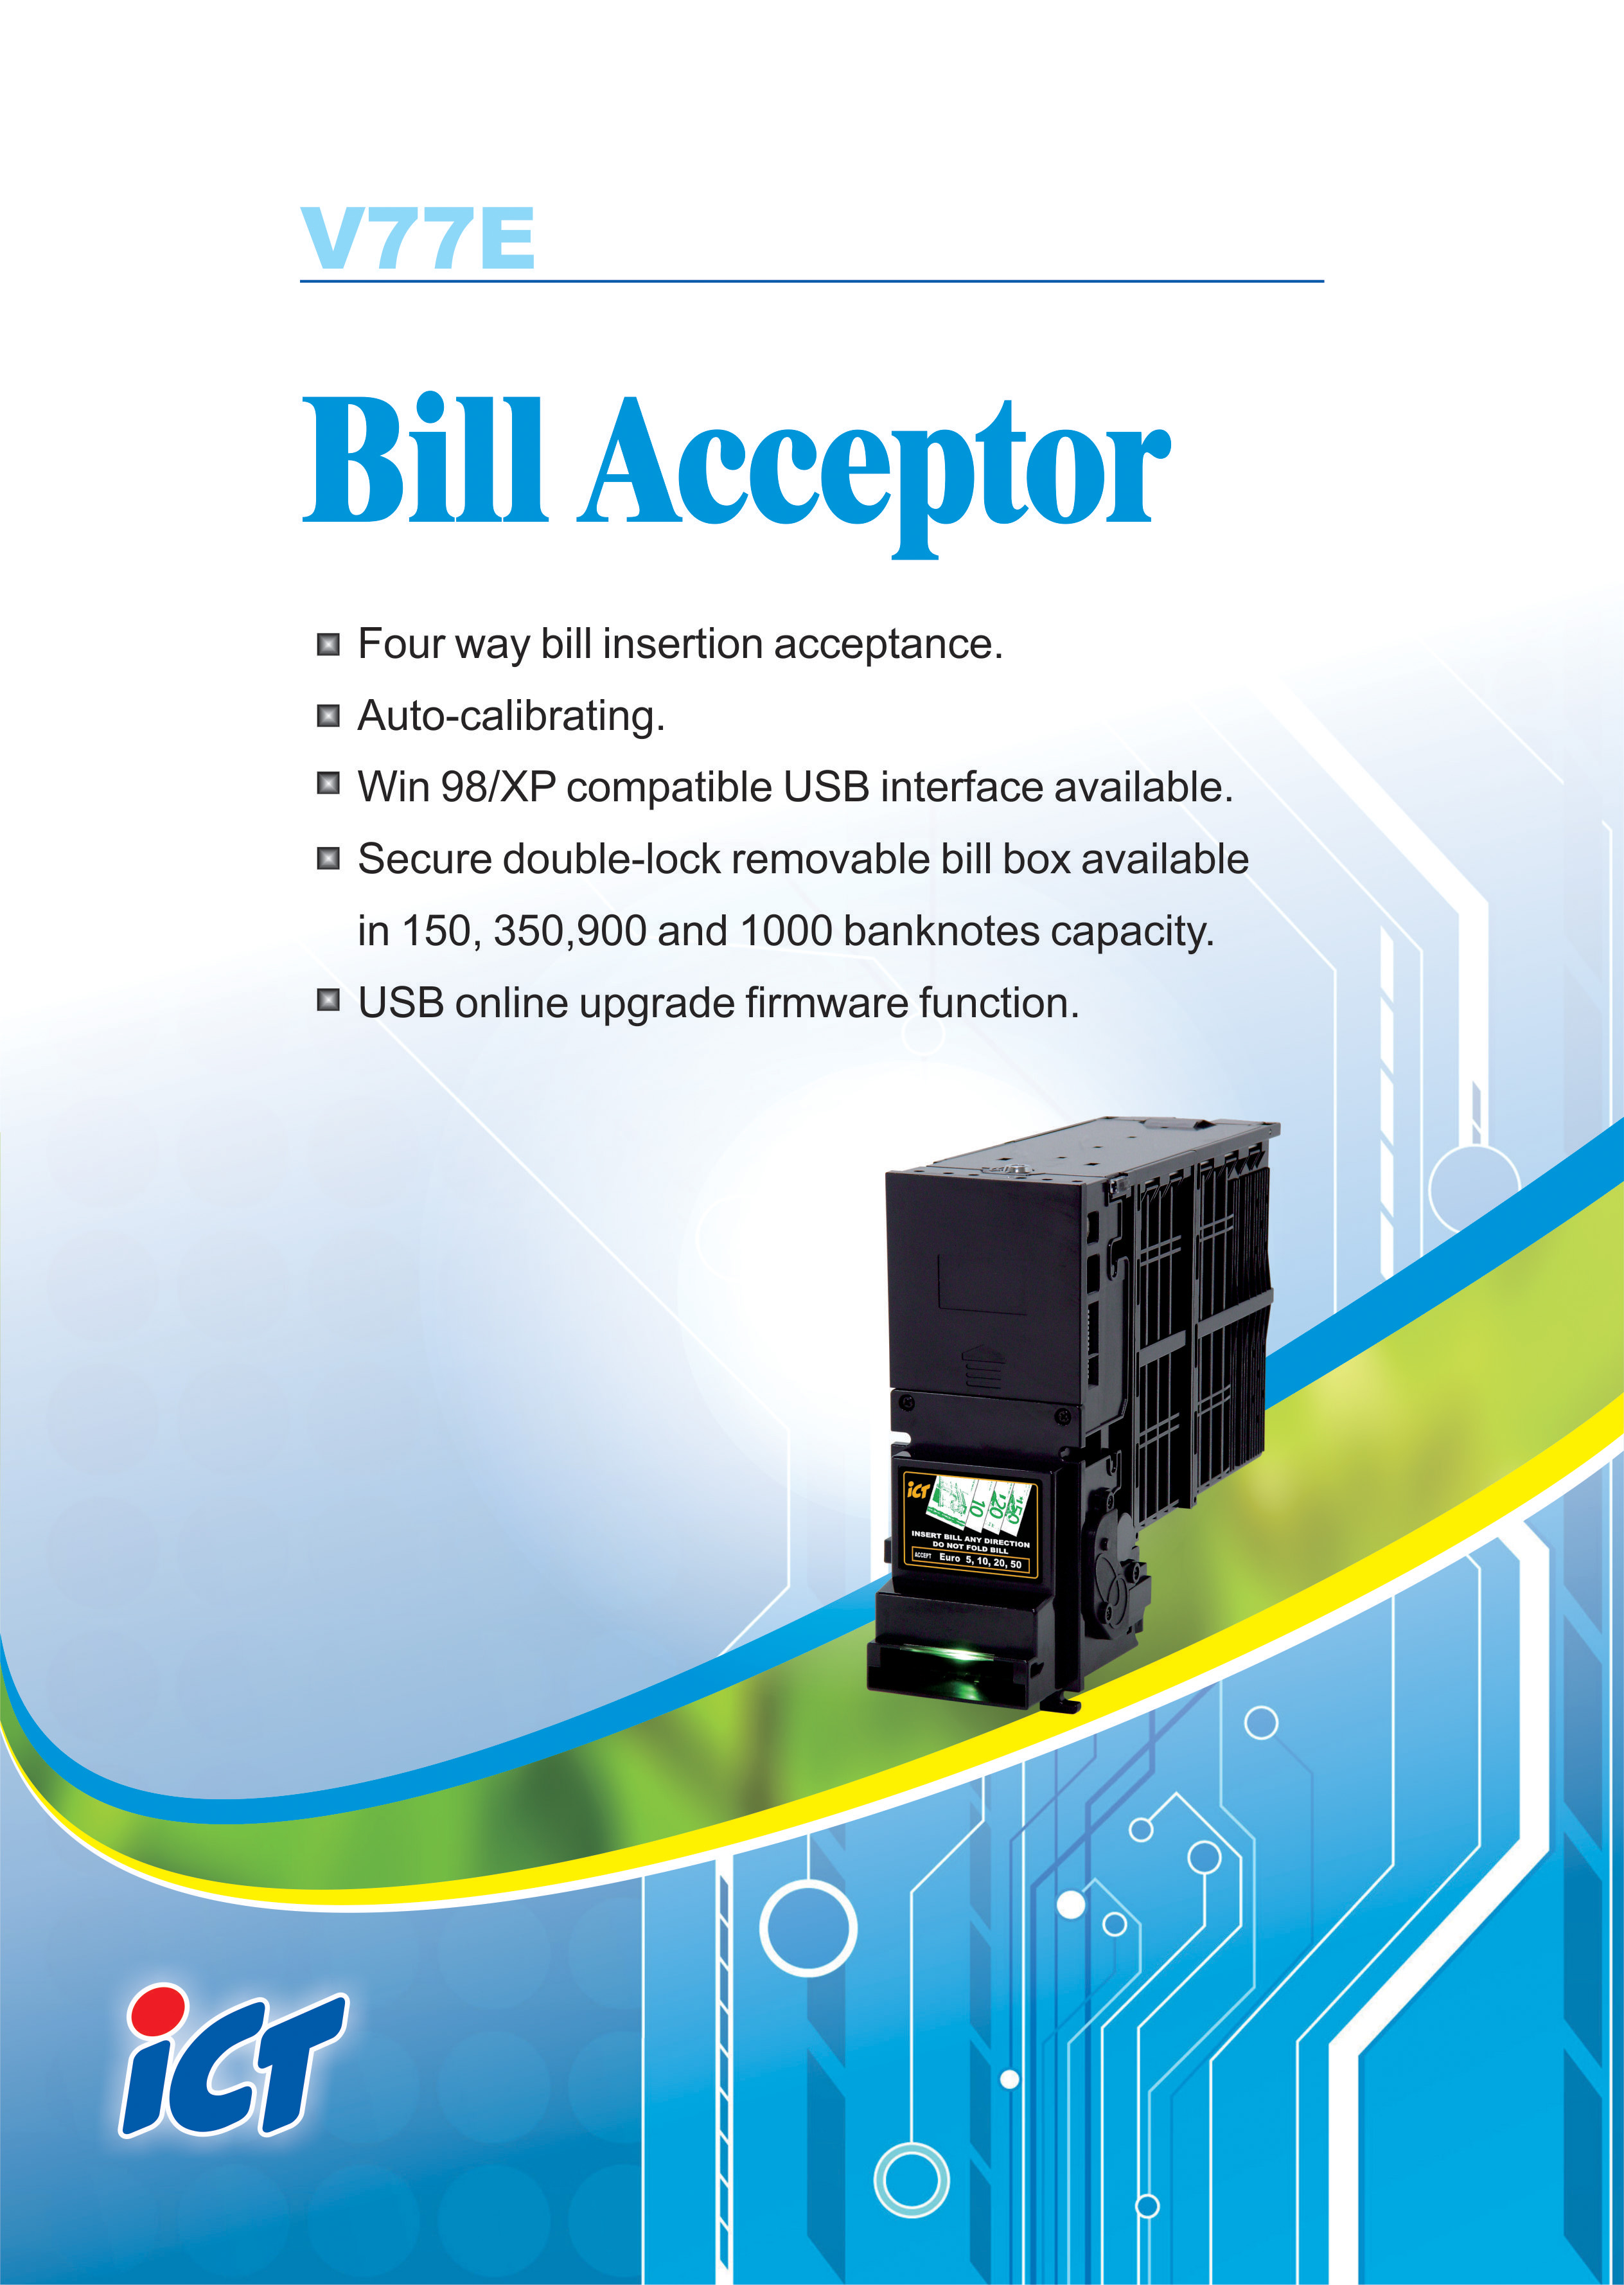 Bill_Acceptor_V77E